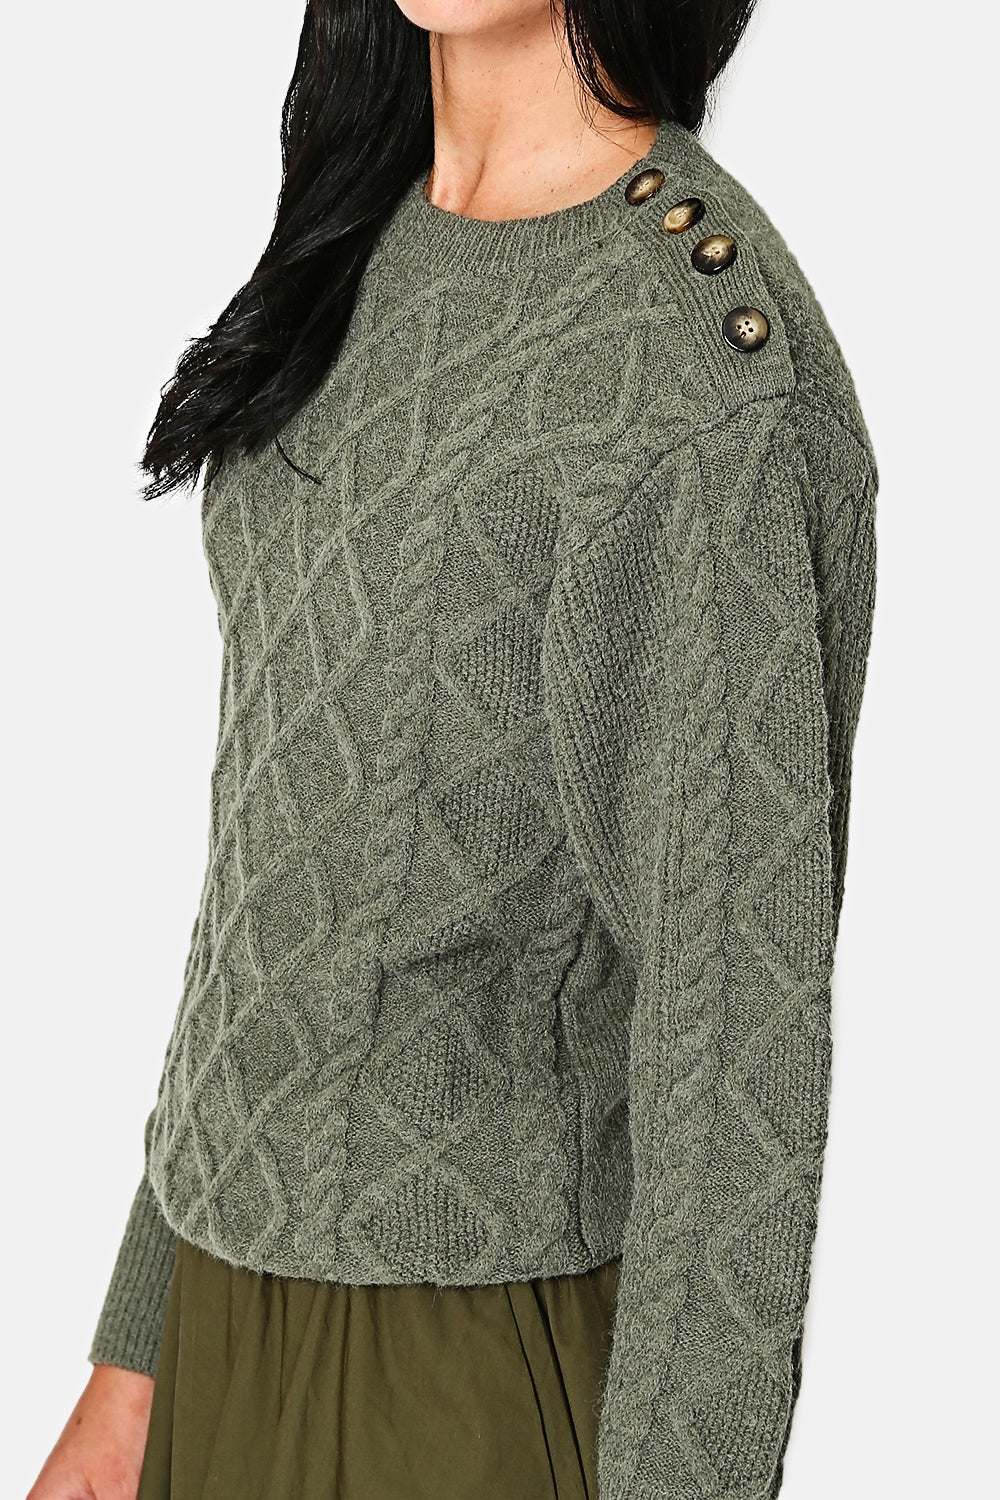 Leicht hochgeschlossener Pullover mit ausgefallenen Knöpfen an der Schulter